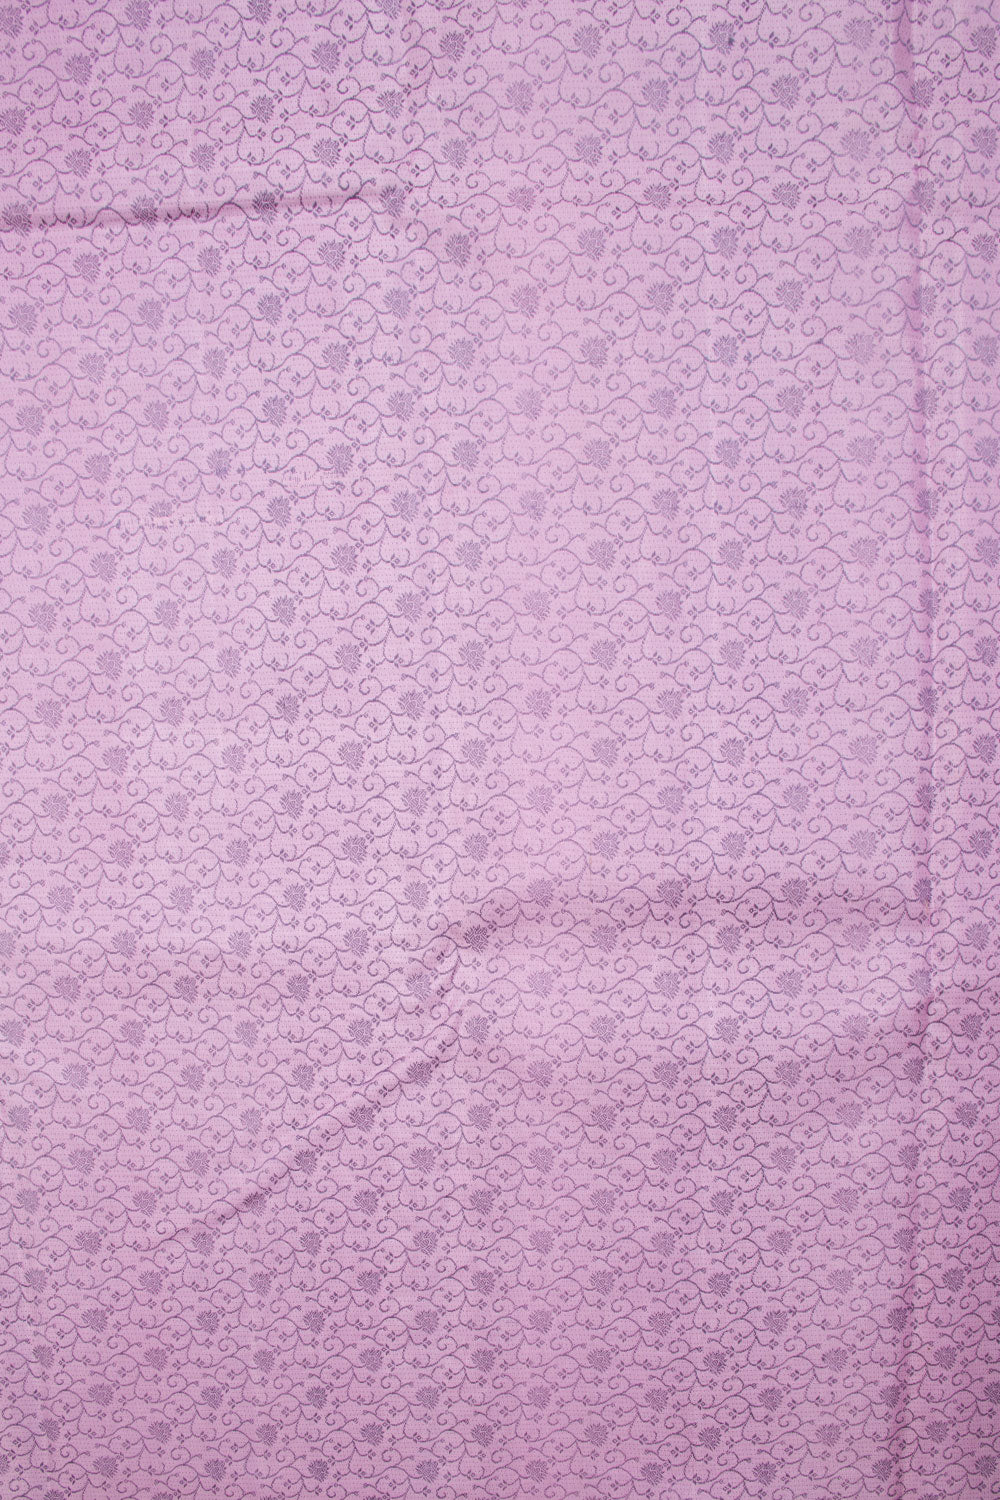 Tyrian Purple Handloom Kanjivaram silk saree - Avishya